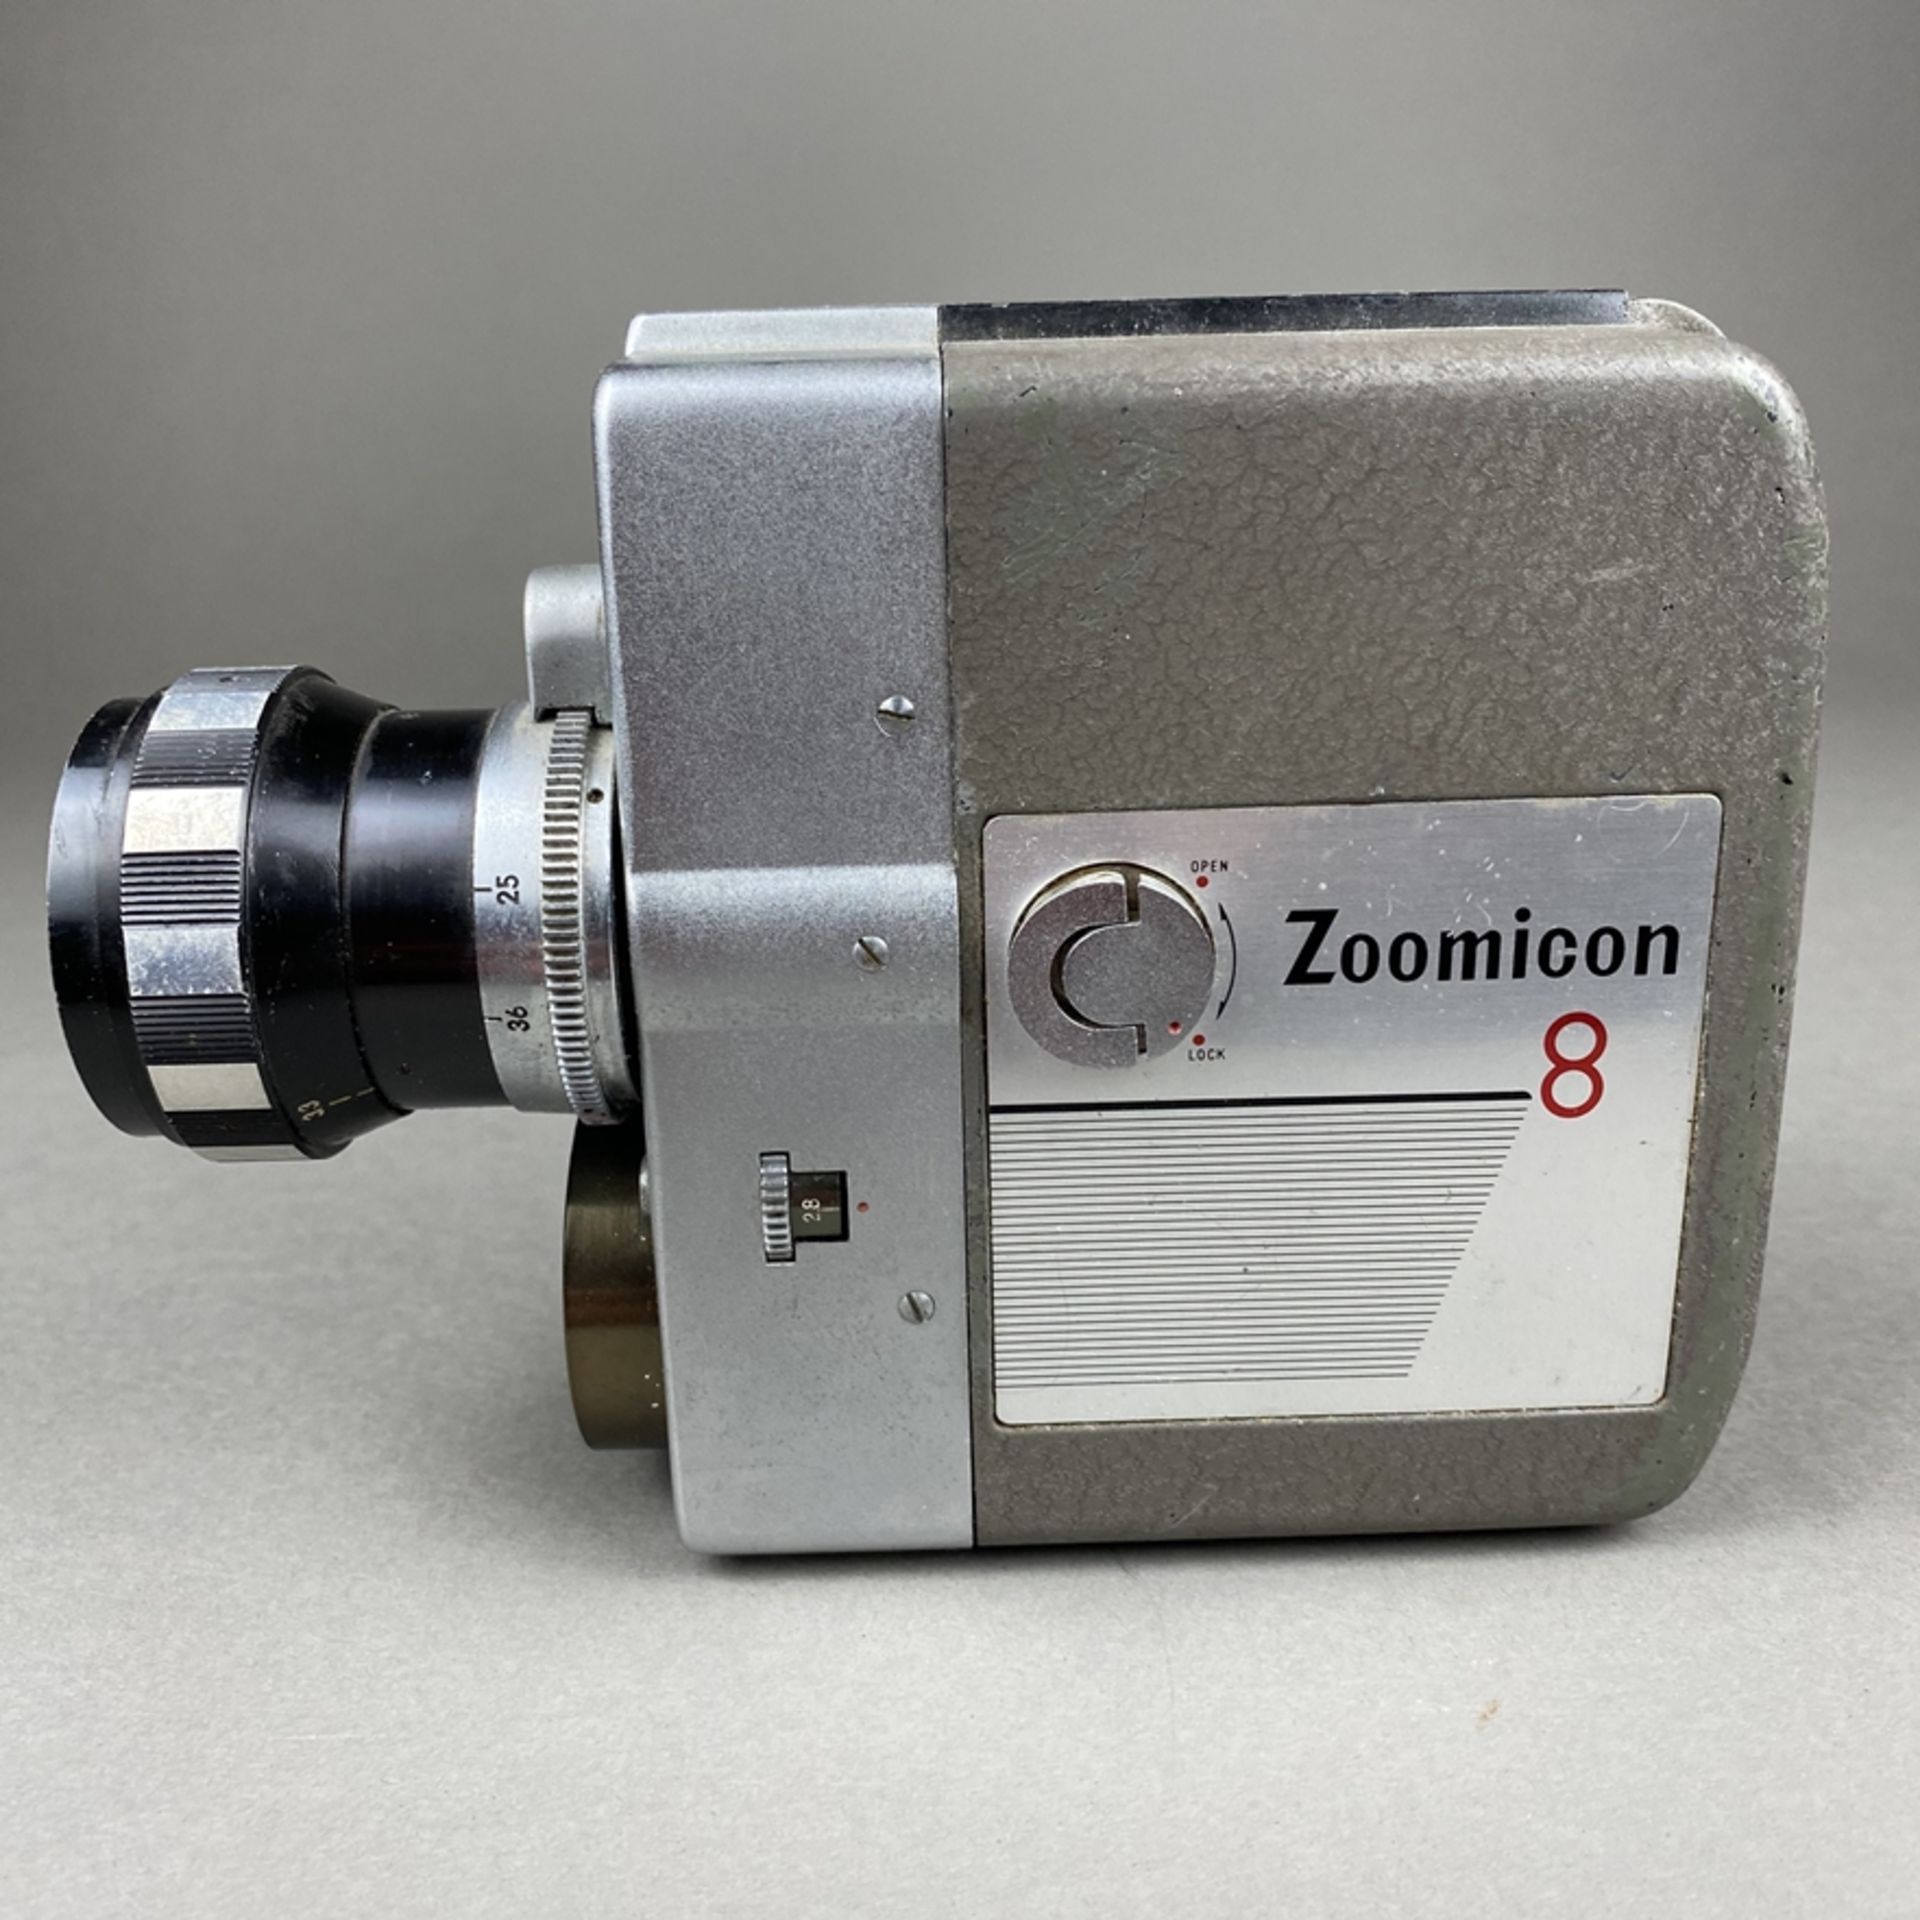 Vintage Filmkamera Zoomicon 8 - STK, Japan, Metallgehäuse, 1959/60, Objektiv Zoomicor / Zoom, f=9- - Bild 6 aus 8